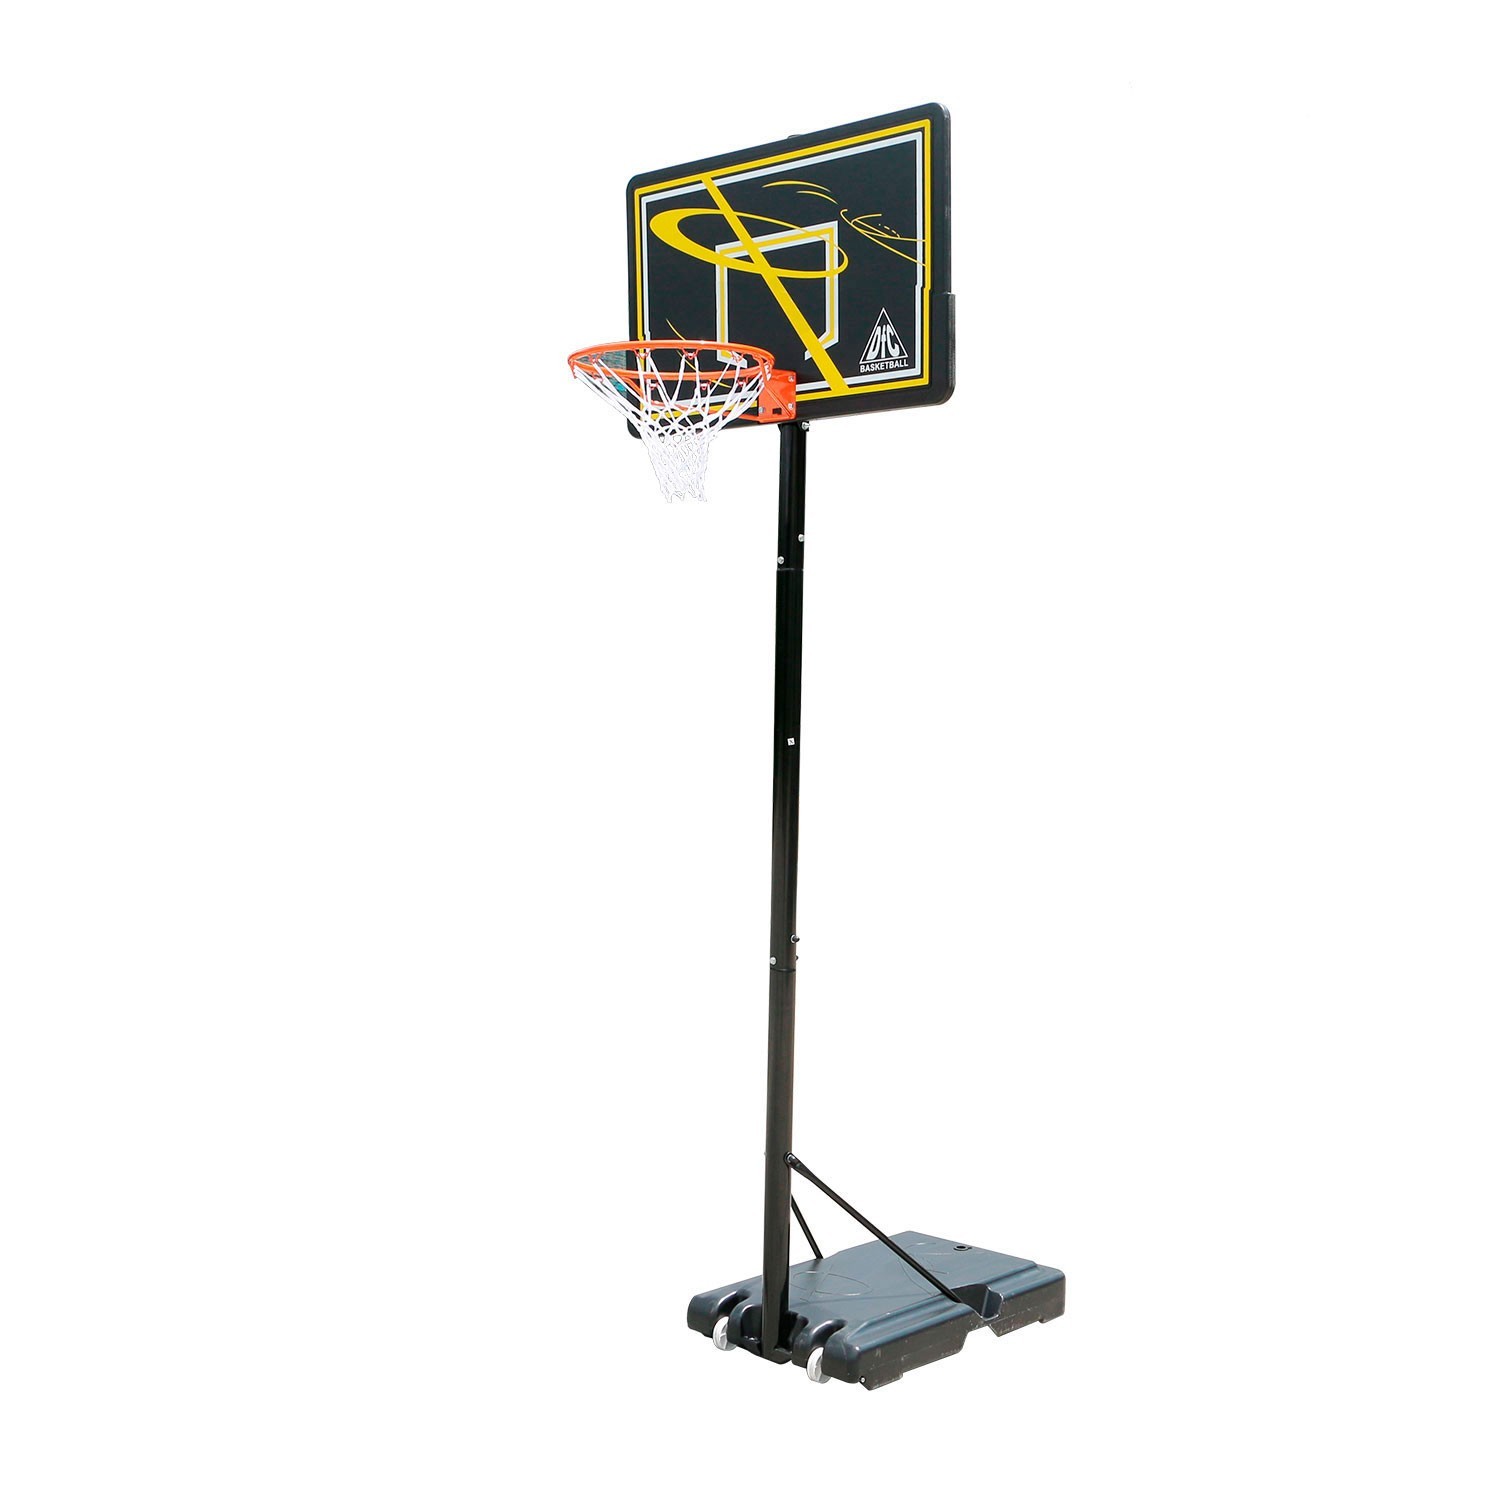 Мобильная баскетбольная стойка DFC KIDSF - купить в Москве, цены на Мегамаркет | 100044391059